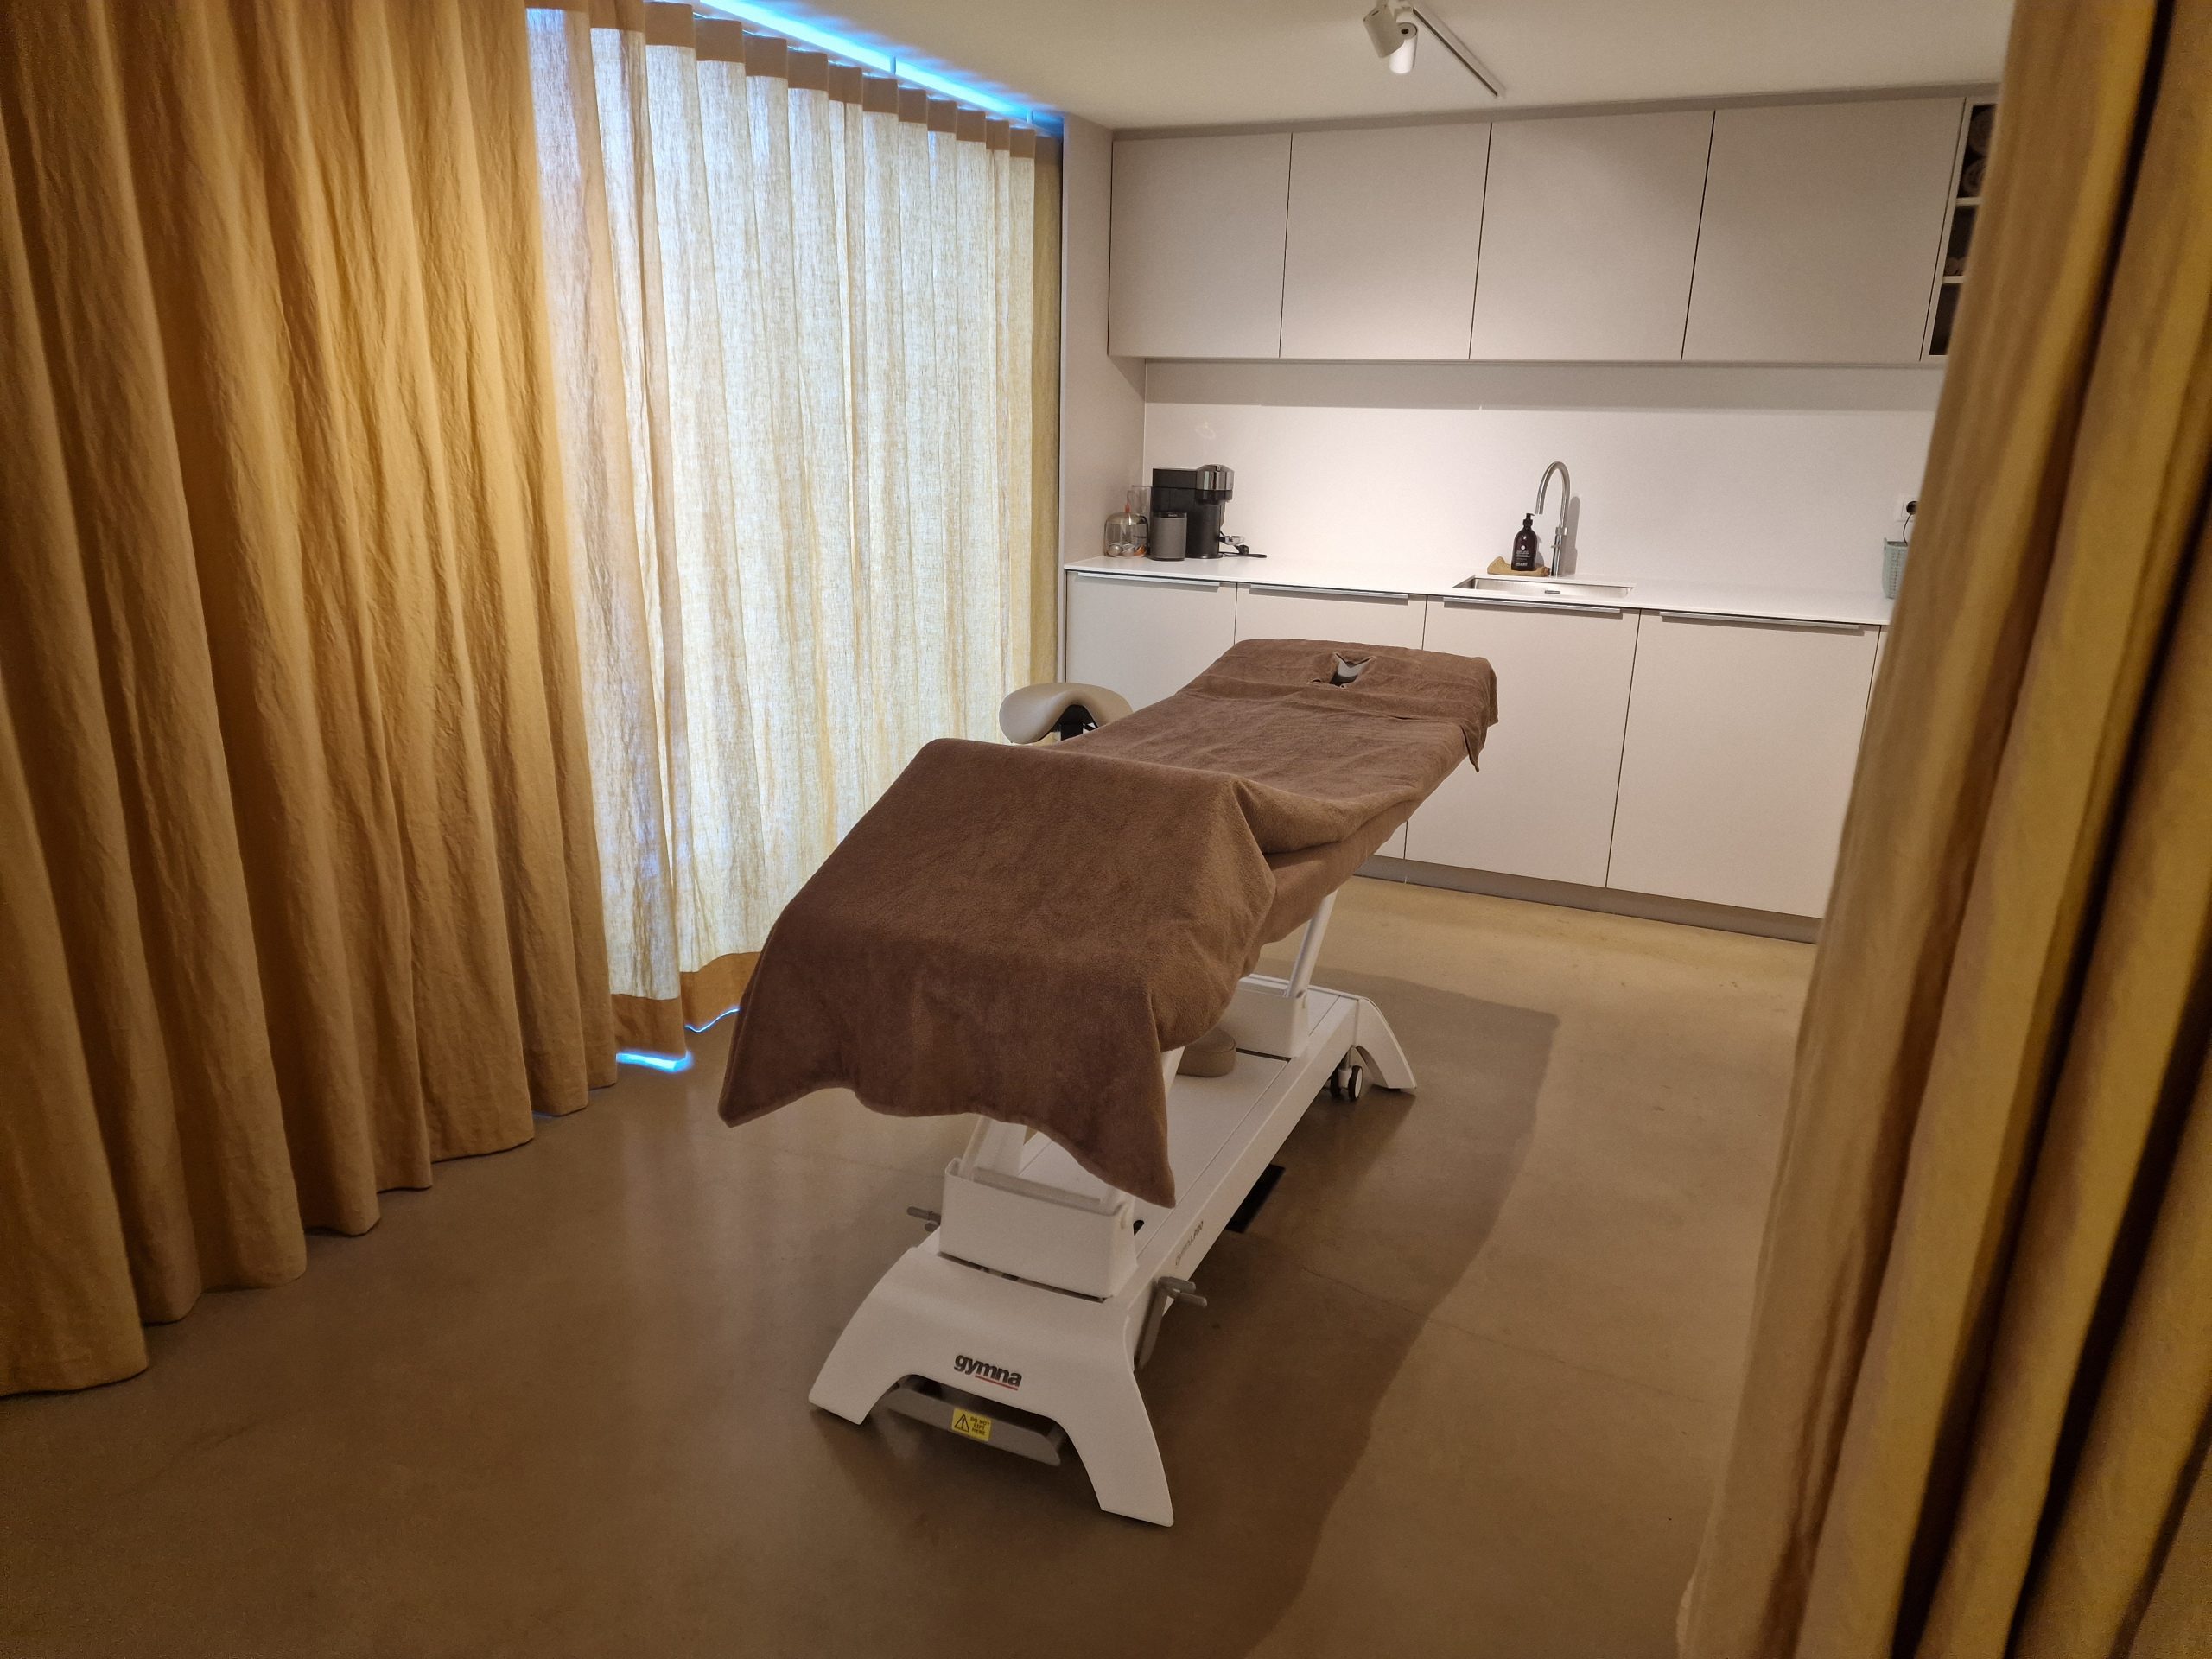 Parkwijk massagepraktijk is een luxe praktijk voor massagetherapie